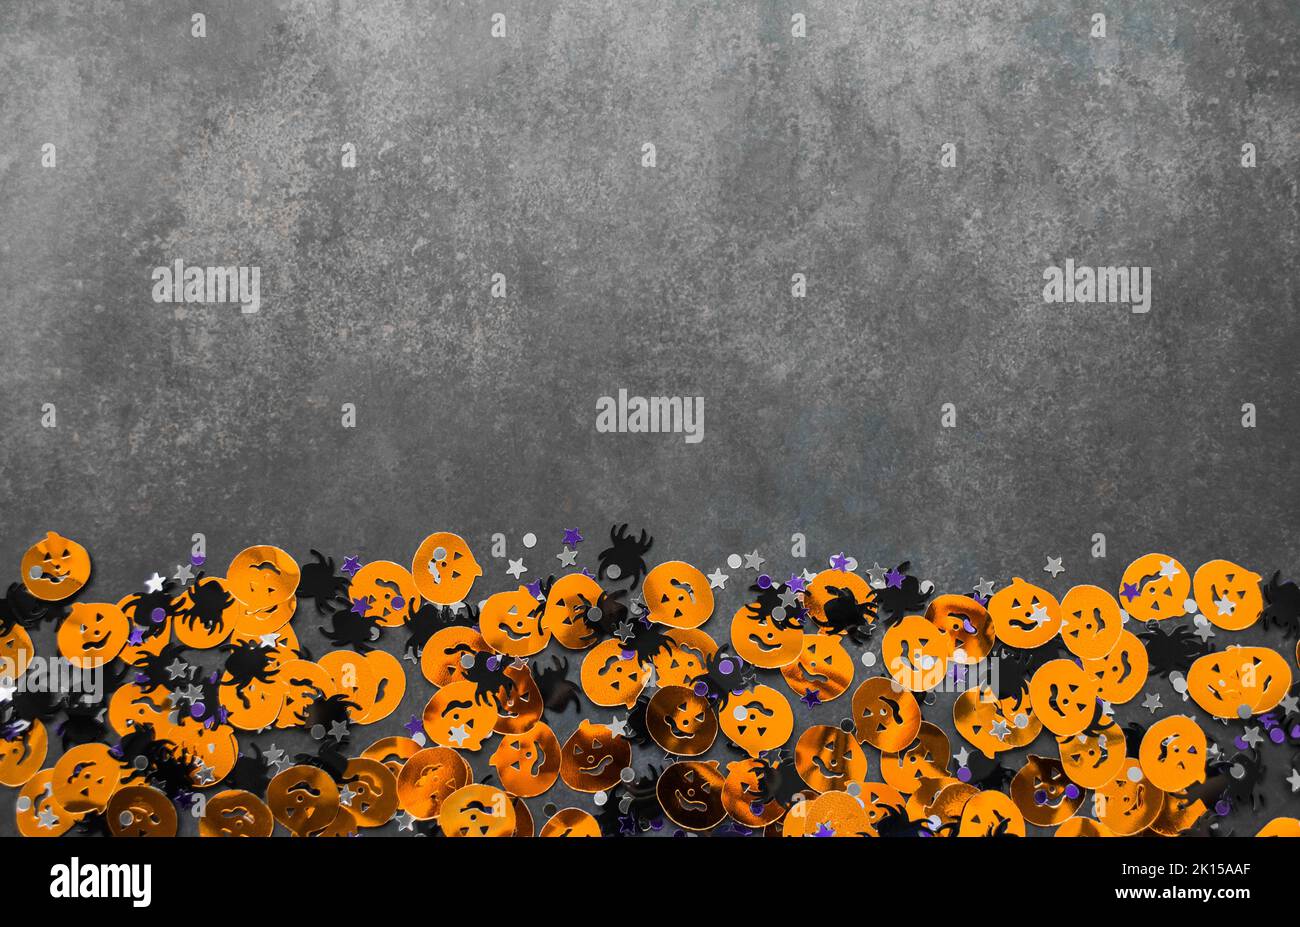 Halloween fond: Confetti en forme de citrouilles orange, araignées noires et étoiles. Arrière-plan gris. Copier l'espace. Banque D'Images